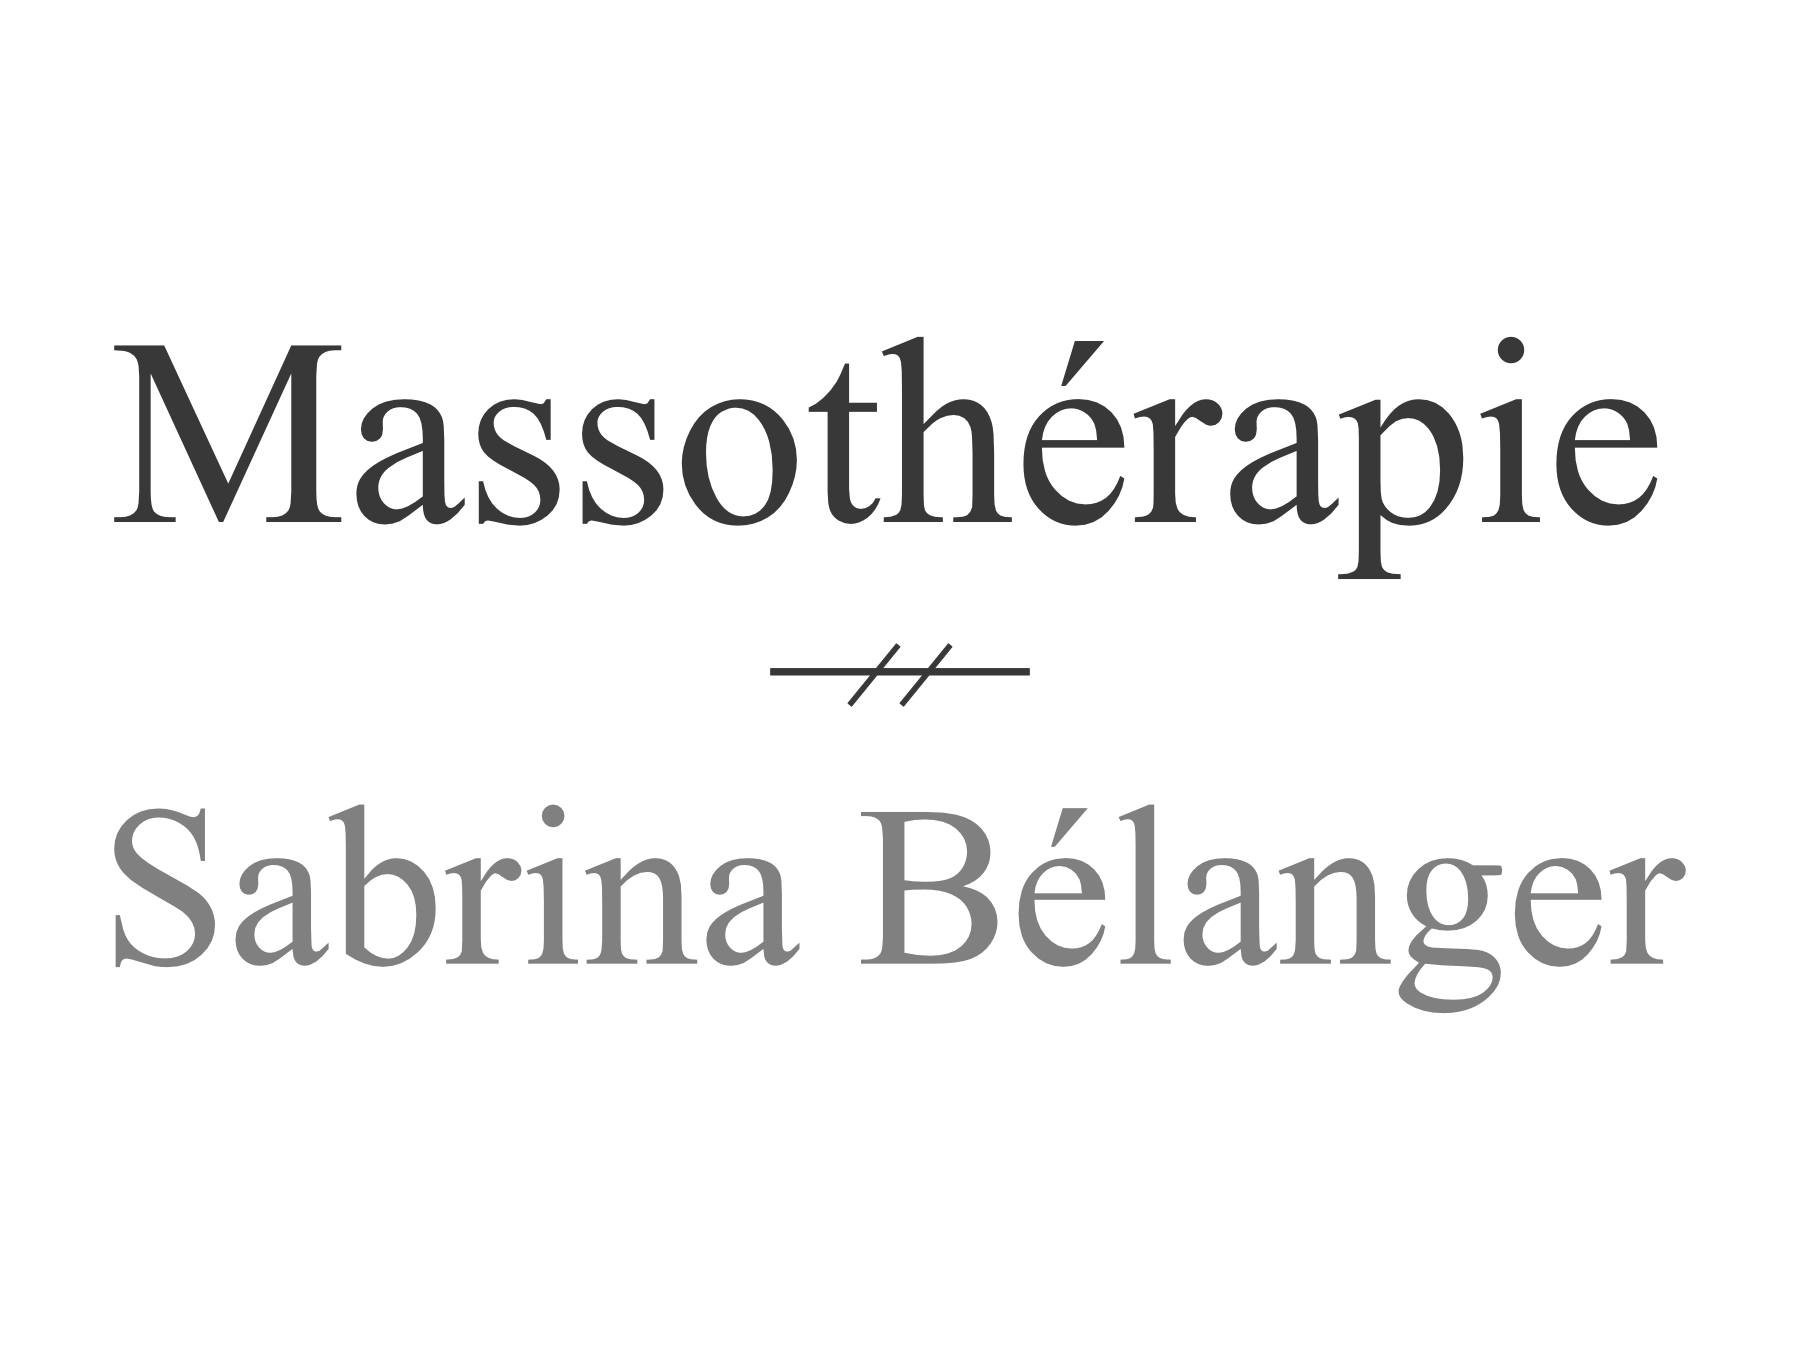 Massothérapie Sabrina Bélanger, vous offrirons un service exceptionnel et notre clinique chiropraticien Actif sont partenaire depuis plusieurs années